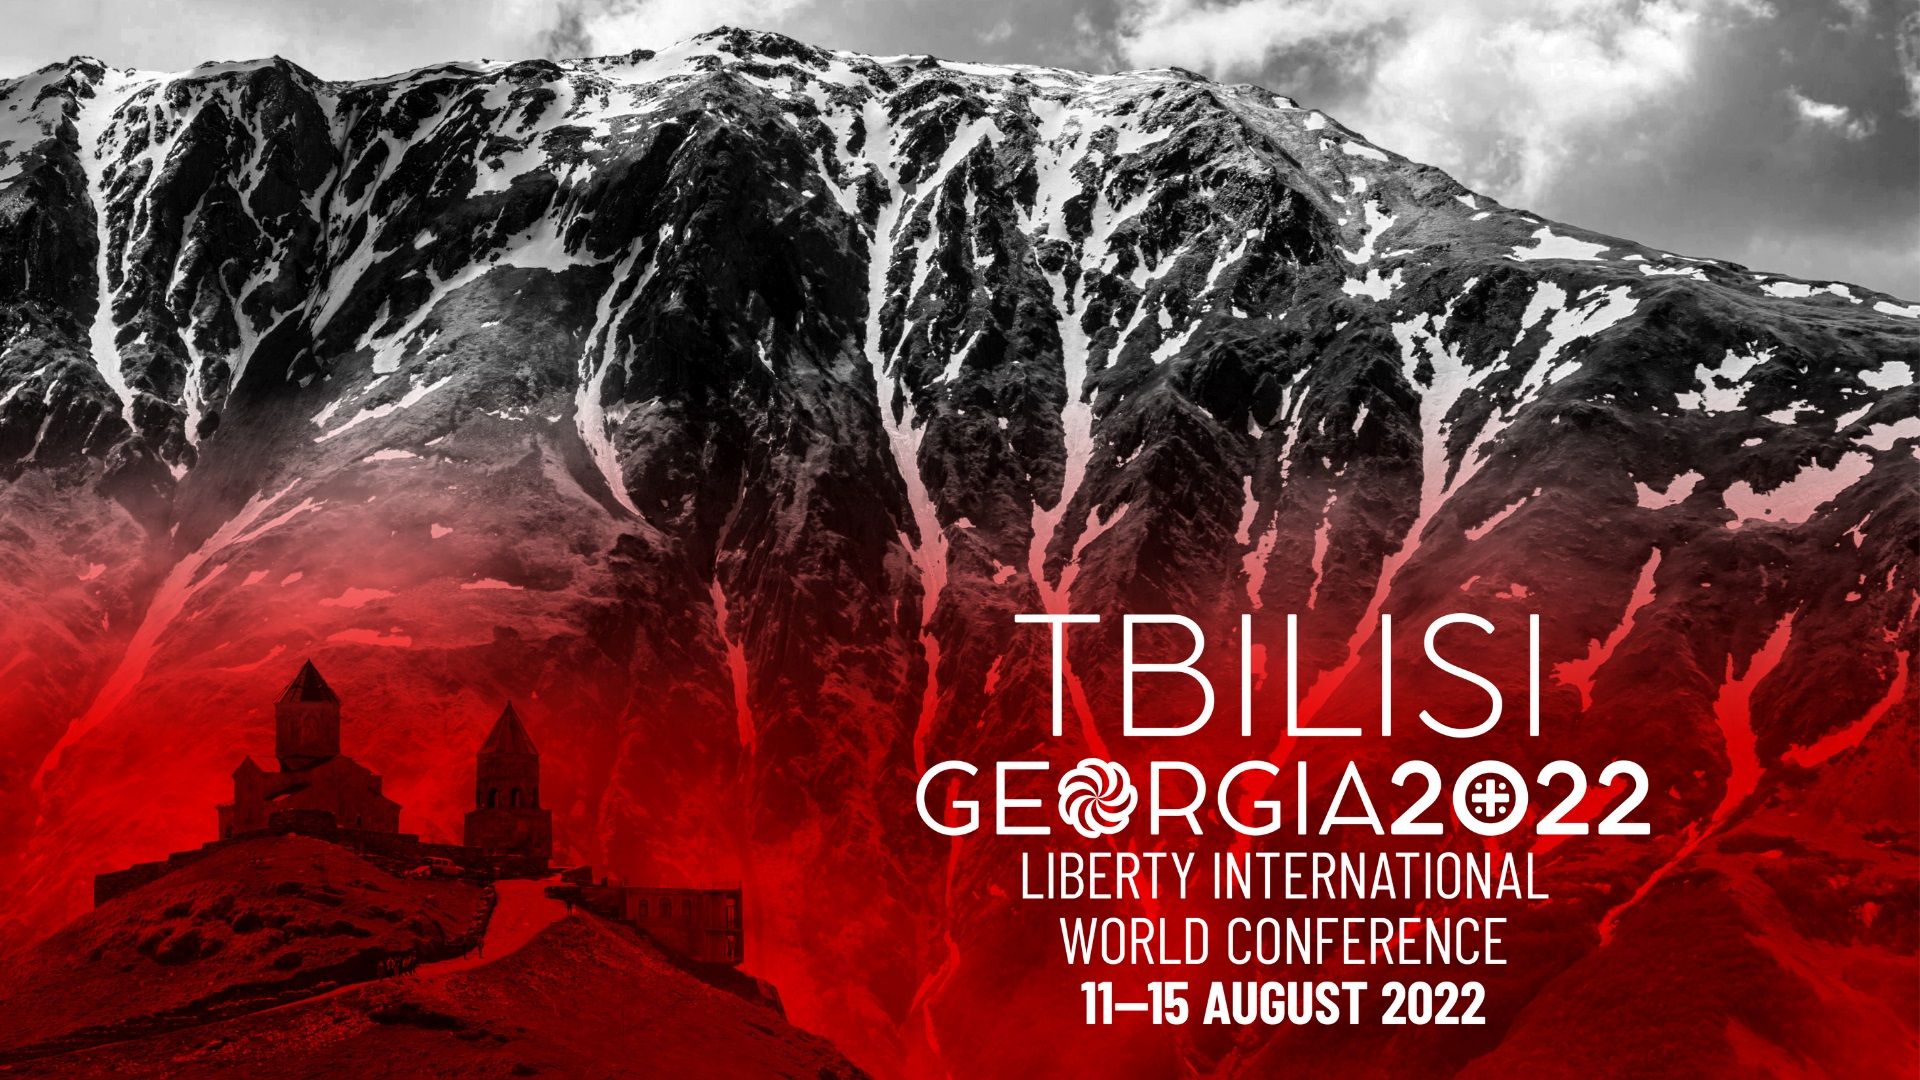 Harmonogram LIWC 2022 Tbilisi już dostępny!